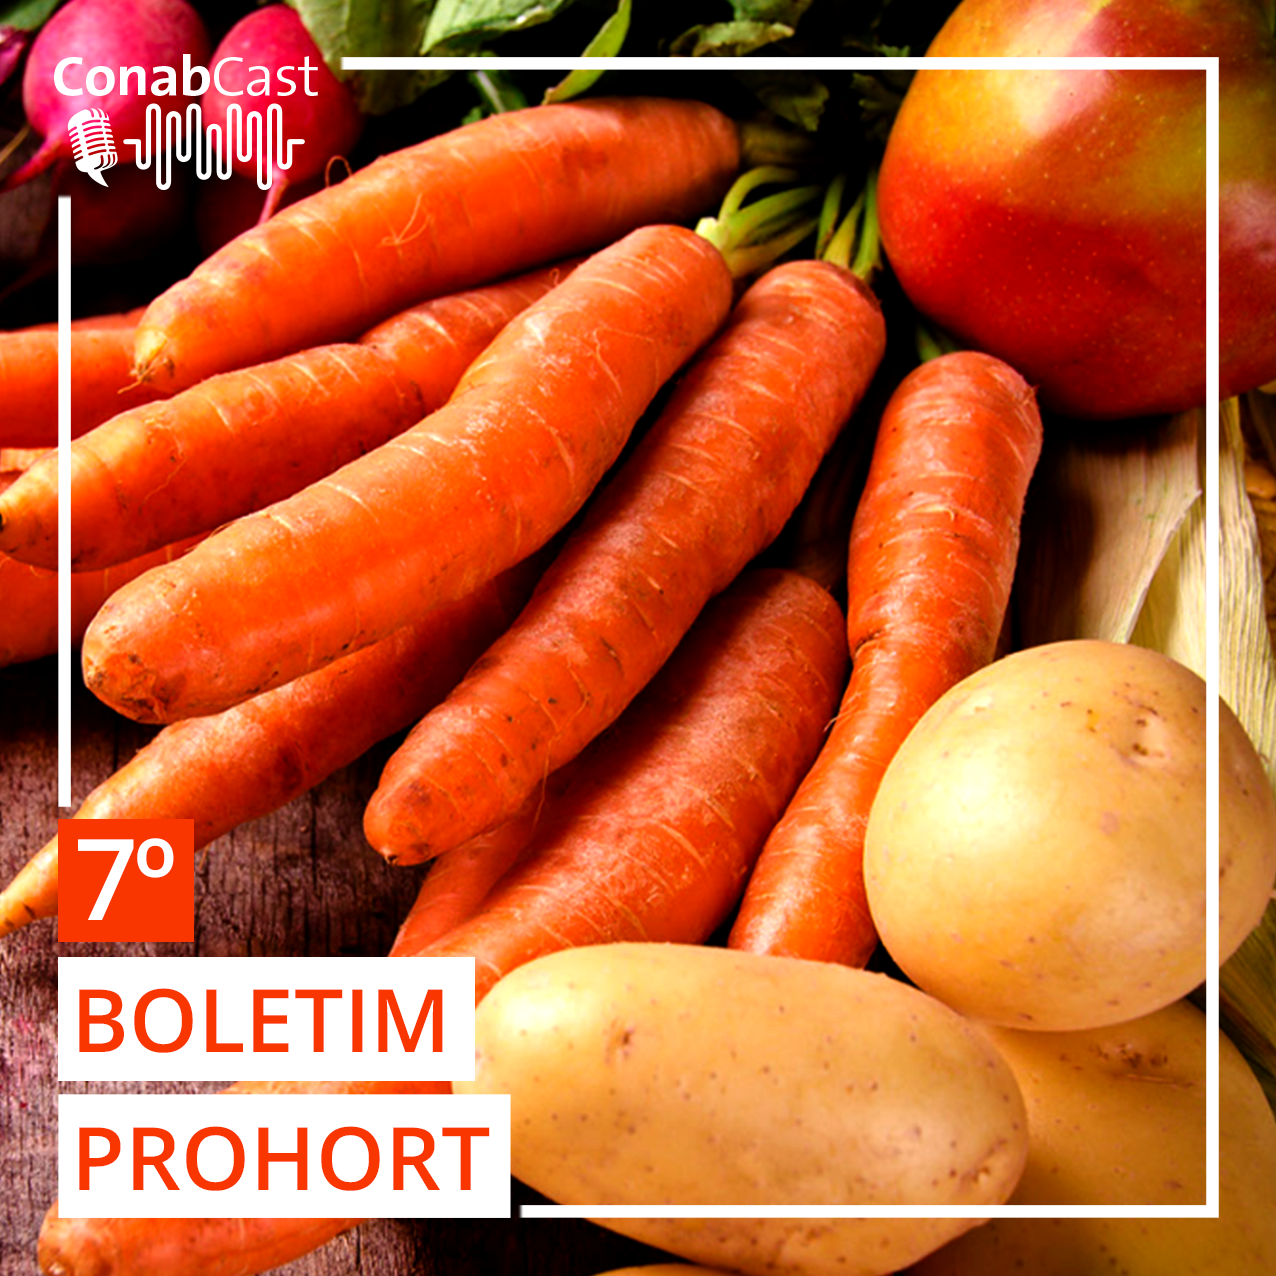 Boletim Prohort verifica manutenção na queda de preços de hortaliças no atacado